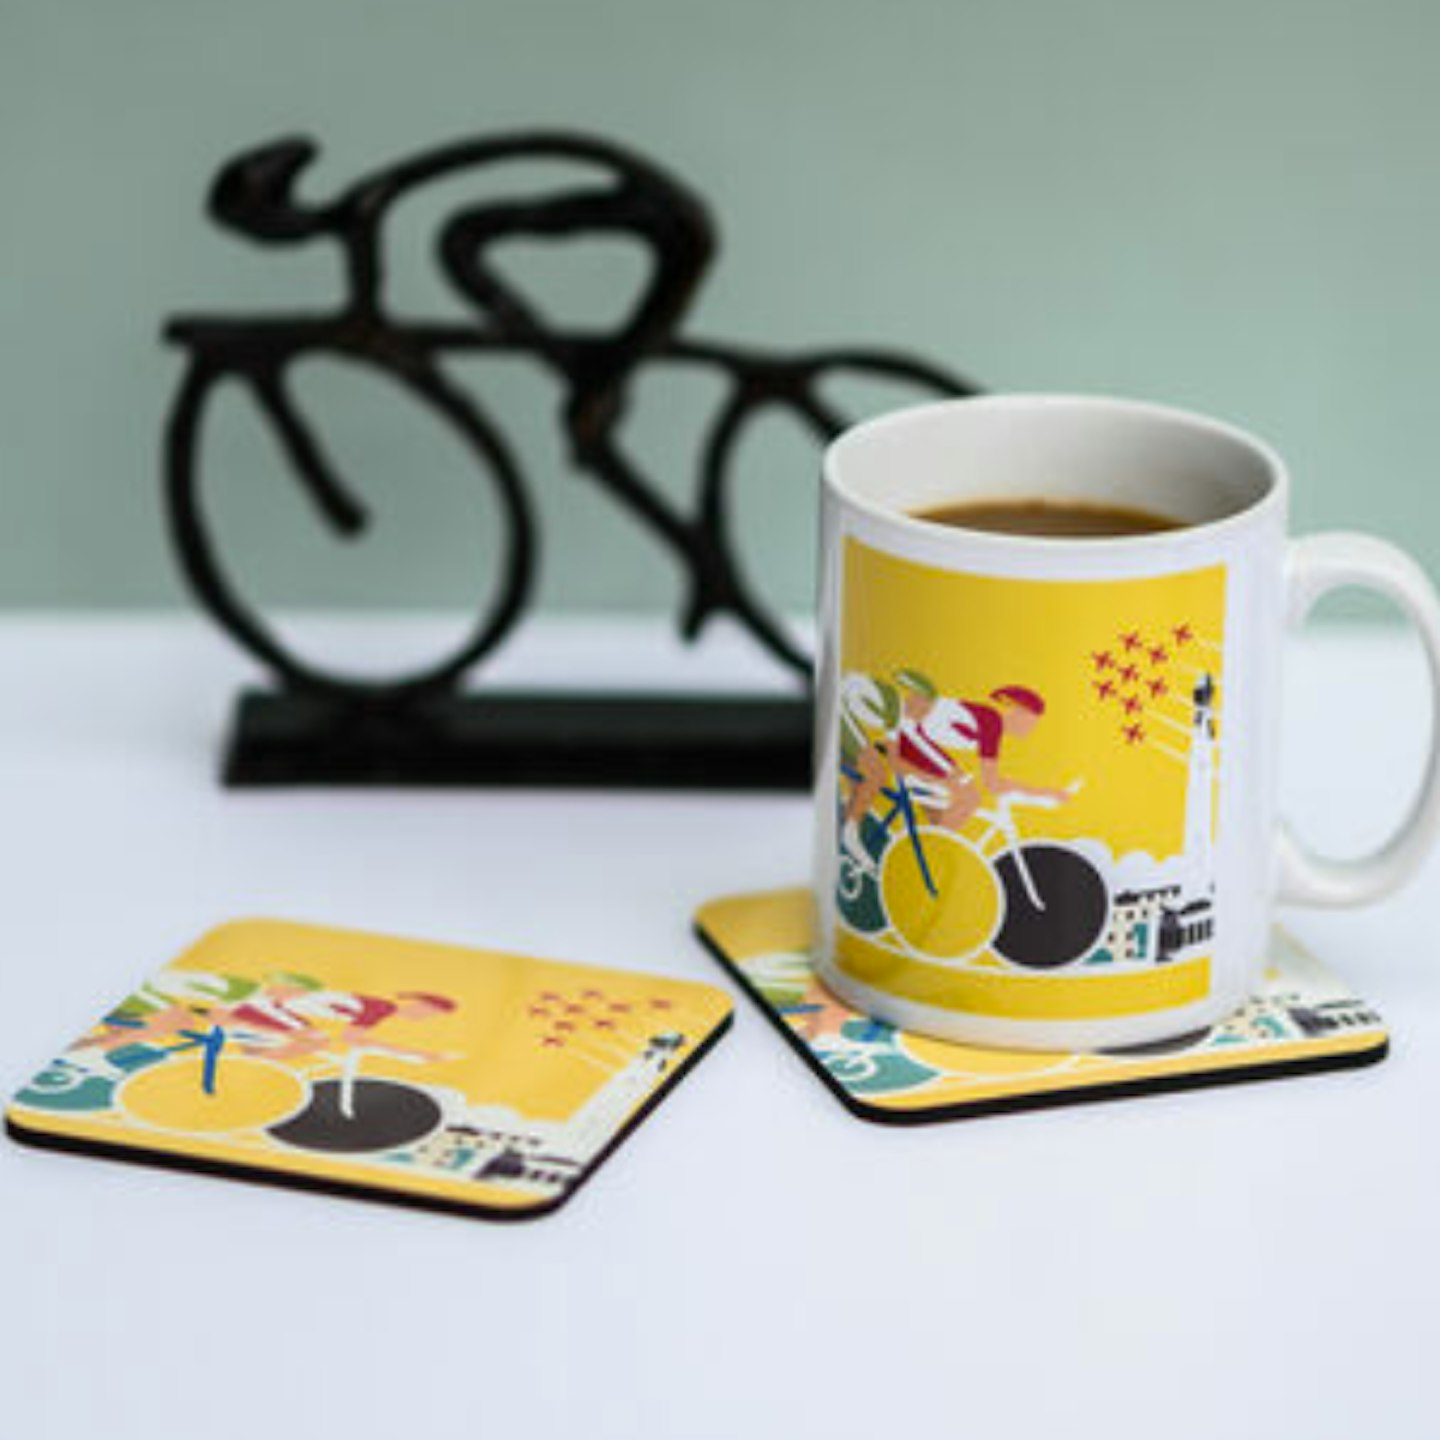 Tour De France Cycling Mug And Coaster Set